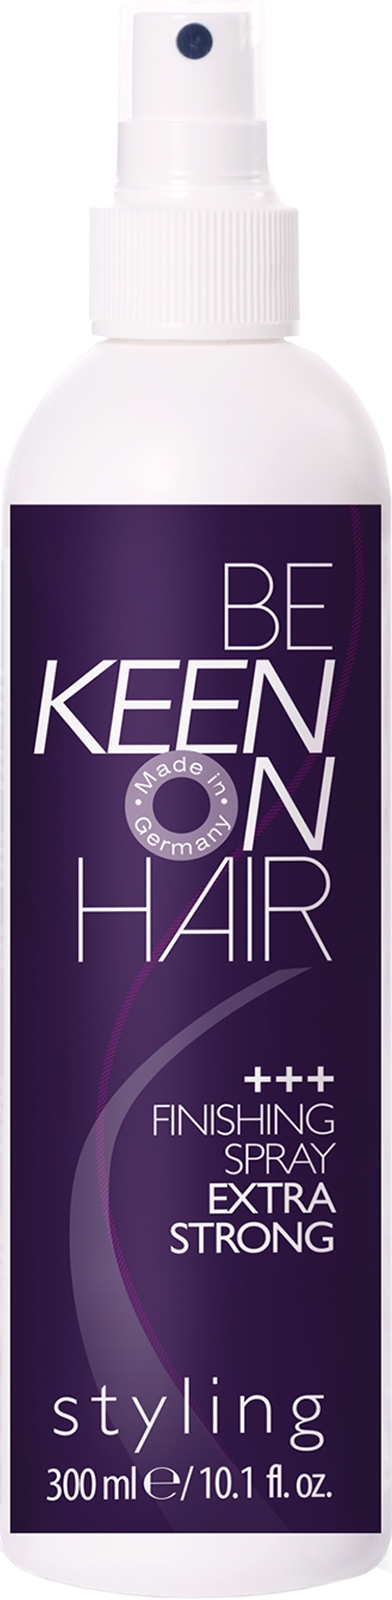 Спреи для укладки волос:  KEEN -  Спрей финишный экстра сильной фиксации безаэрозольный FINISHING SPRAY EXTRA STRONG (300 мл)